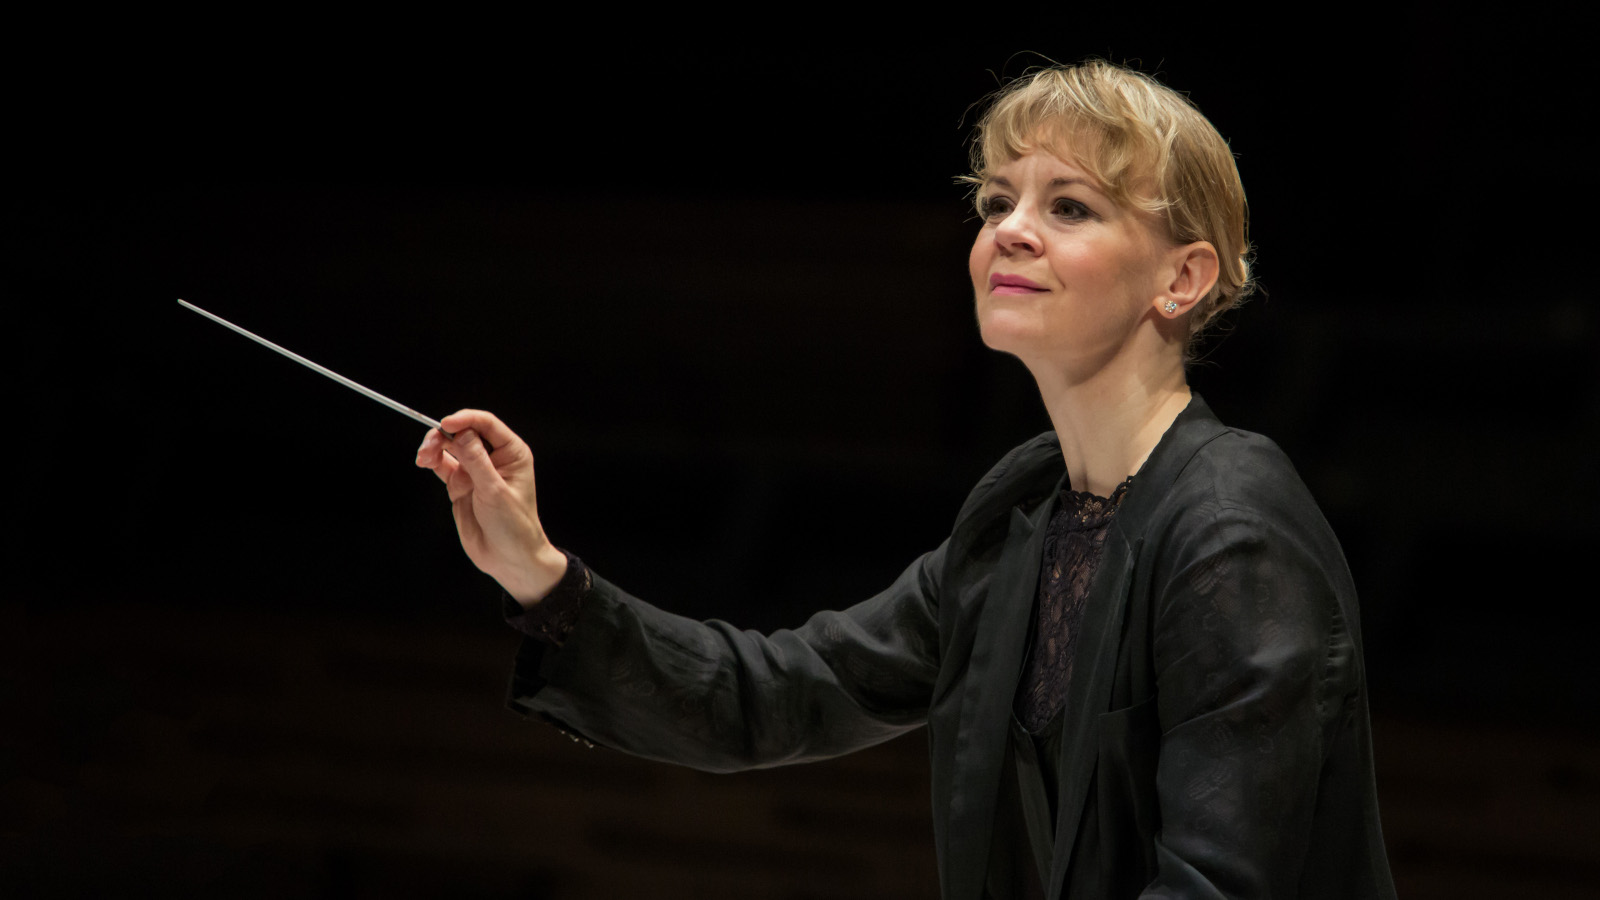 Kuvassa on Susanna Mälkki johtamassa orkesteria.  Kuva on puolivartalokuva ja Mälkillä on tahtipuikko kädessään.